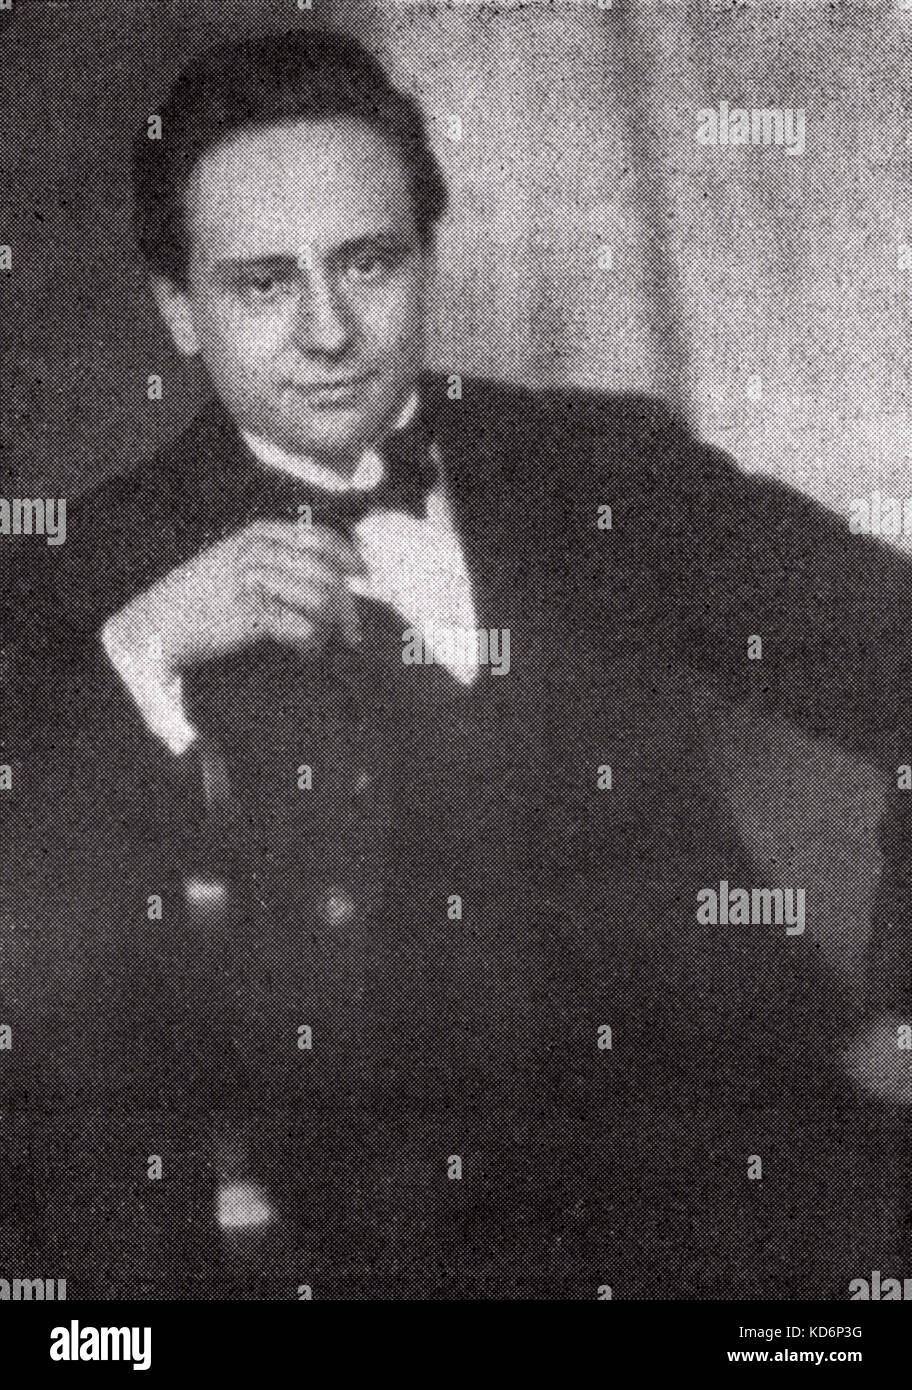 Viktor ULLMANN, ritratto. Compositore tedesco 1898 - 1944. Morì ad Auschwitz. Foto Stock